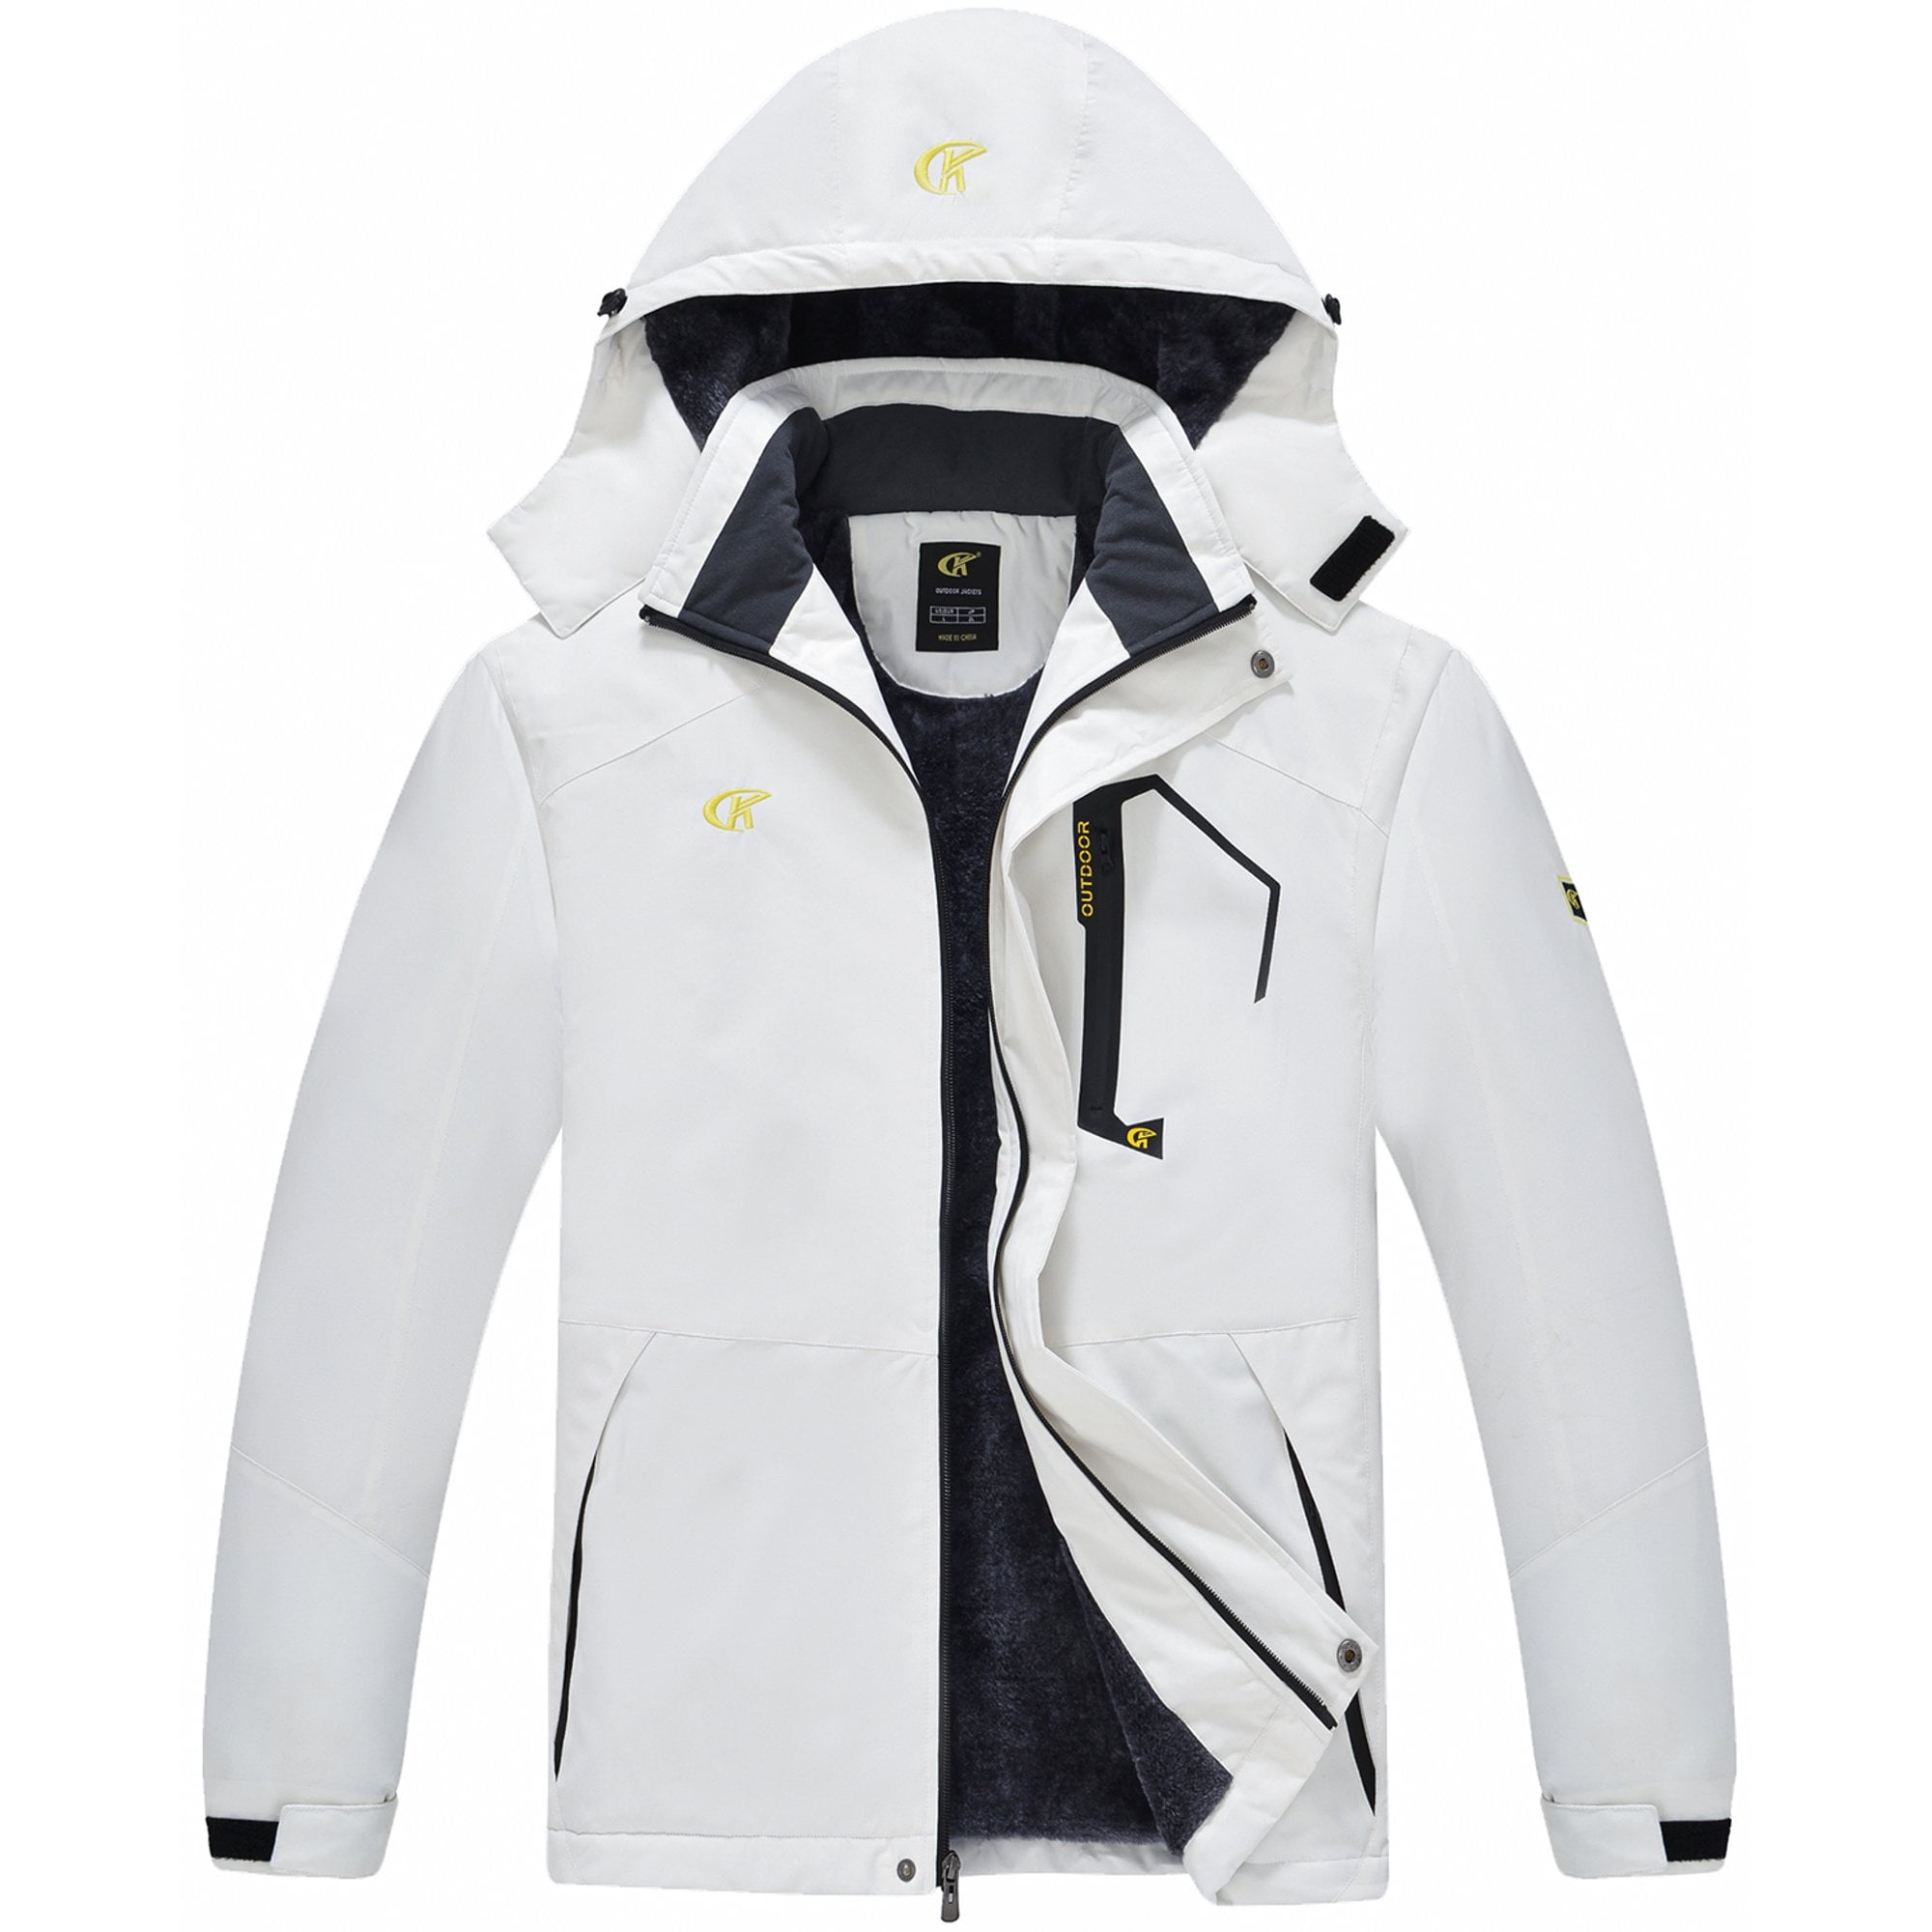 YuKaiChen Men's Waterproof Fleece Snowboard Jacket Windproof Warm Ski Coat Multi-Pockets